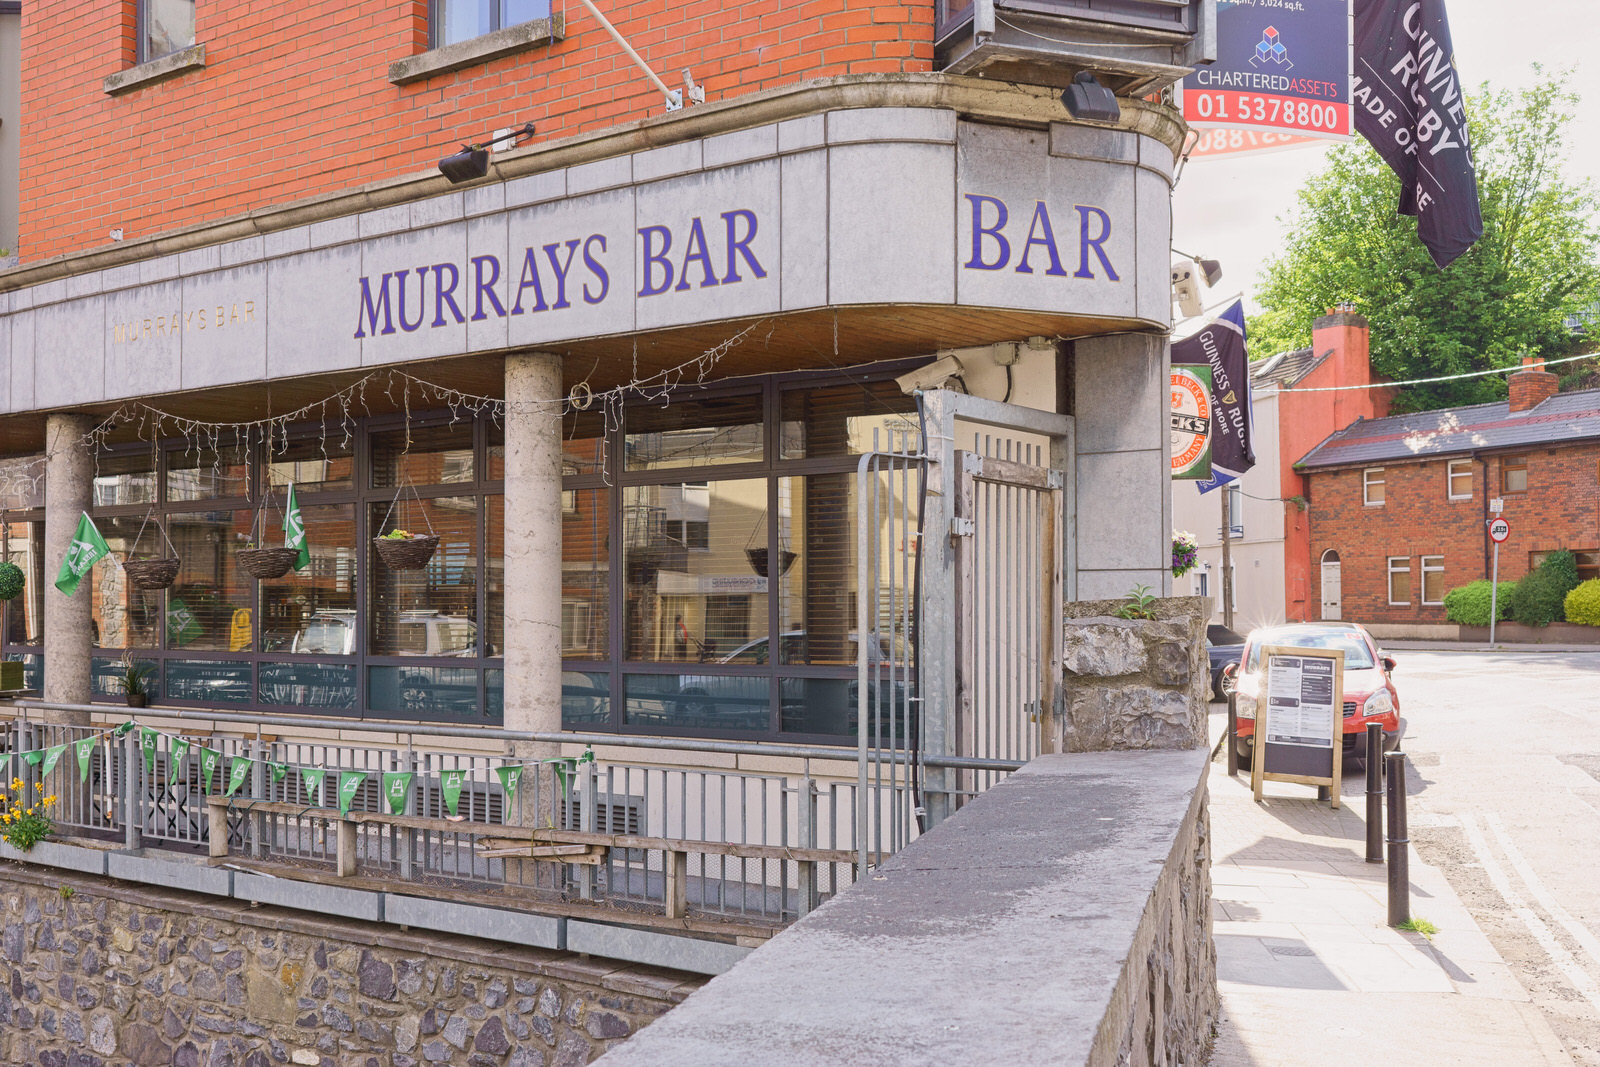 Murrays Bar